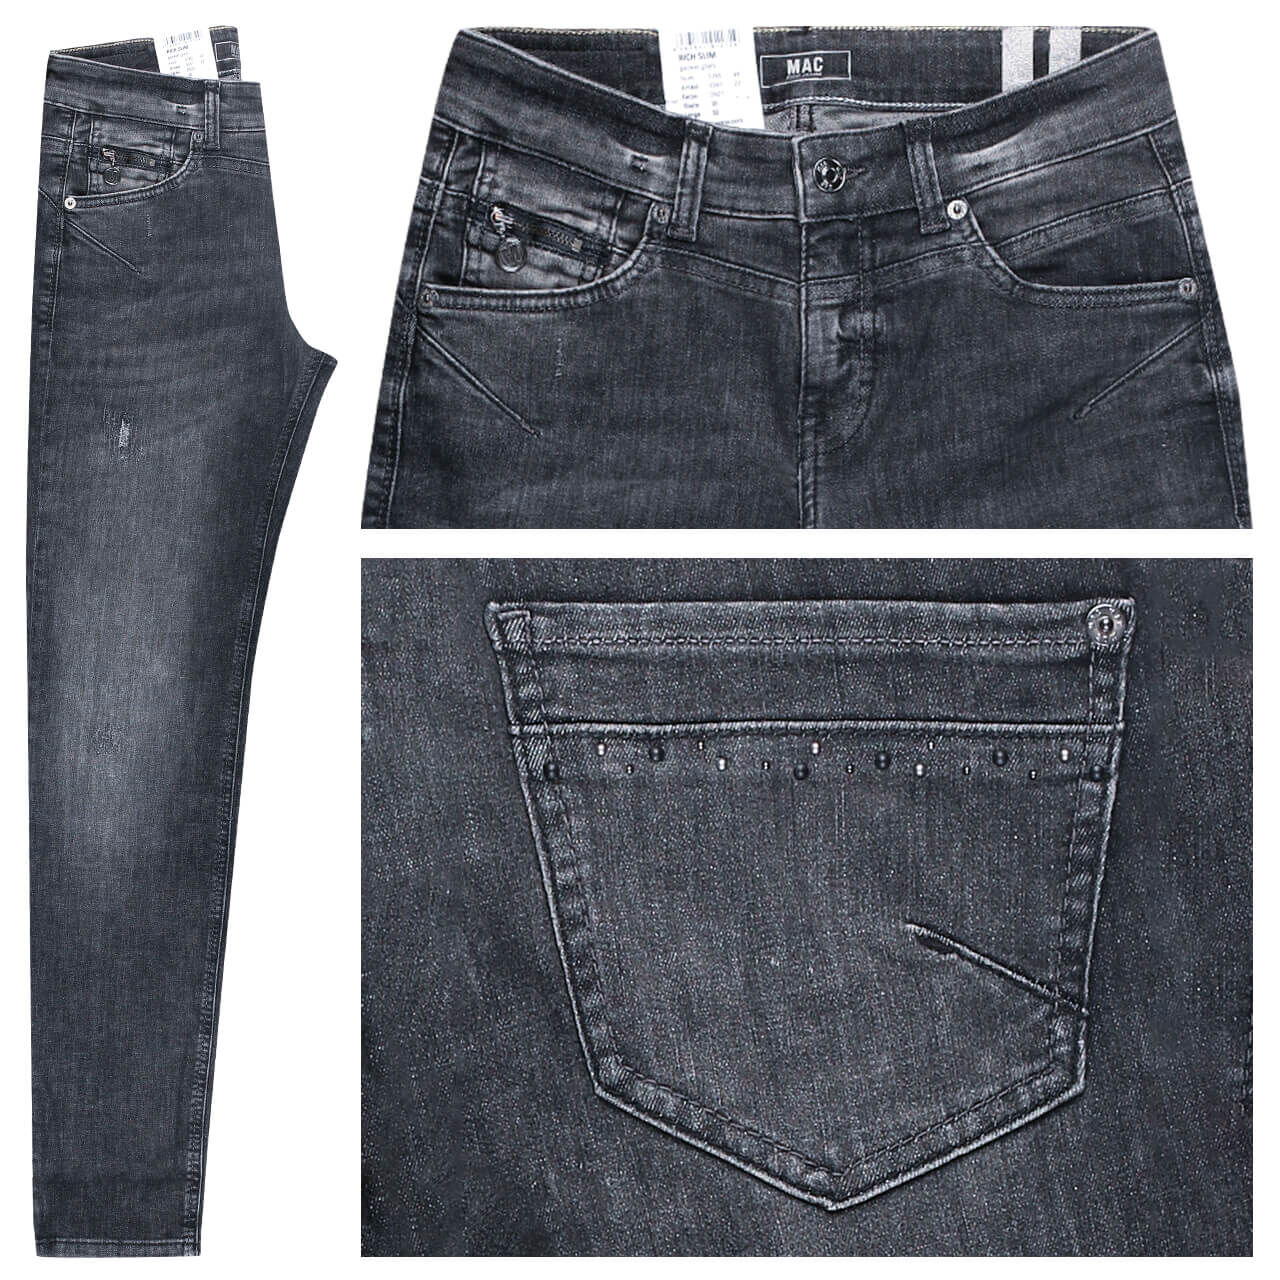 MAC Jeans Rich Slim für Damen in Dunkelgrau angewaschen mit Nieten und Destroyed-Effekten, FarbNr.: D921